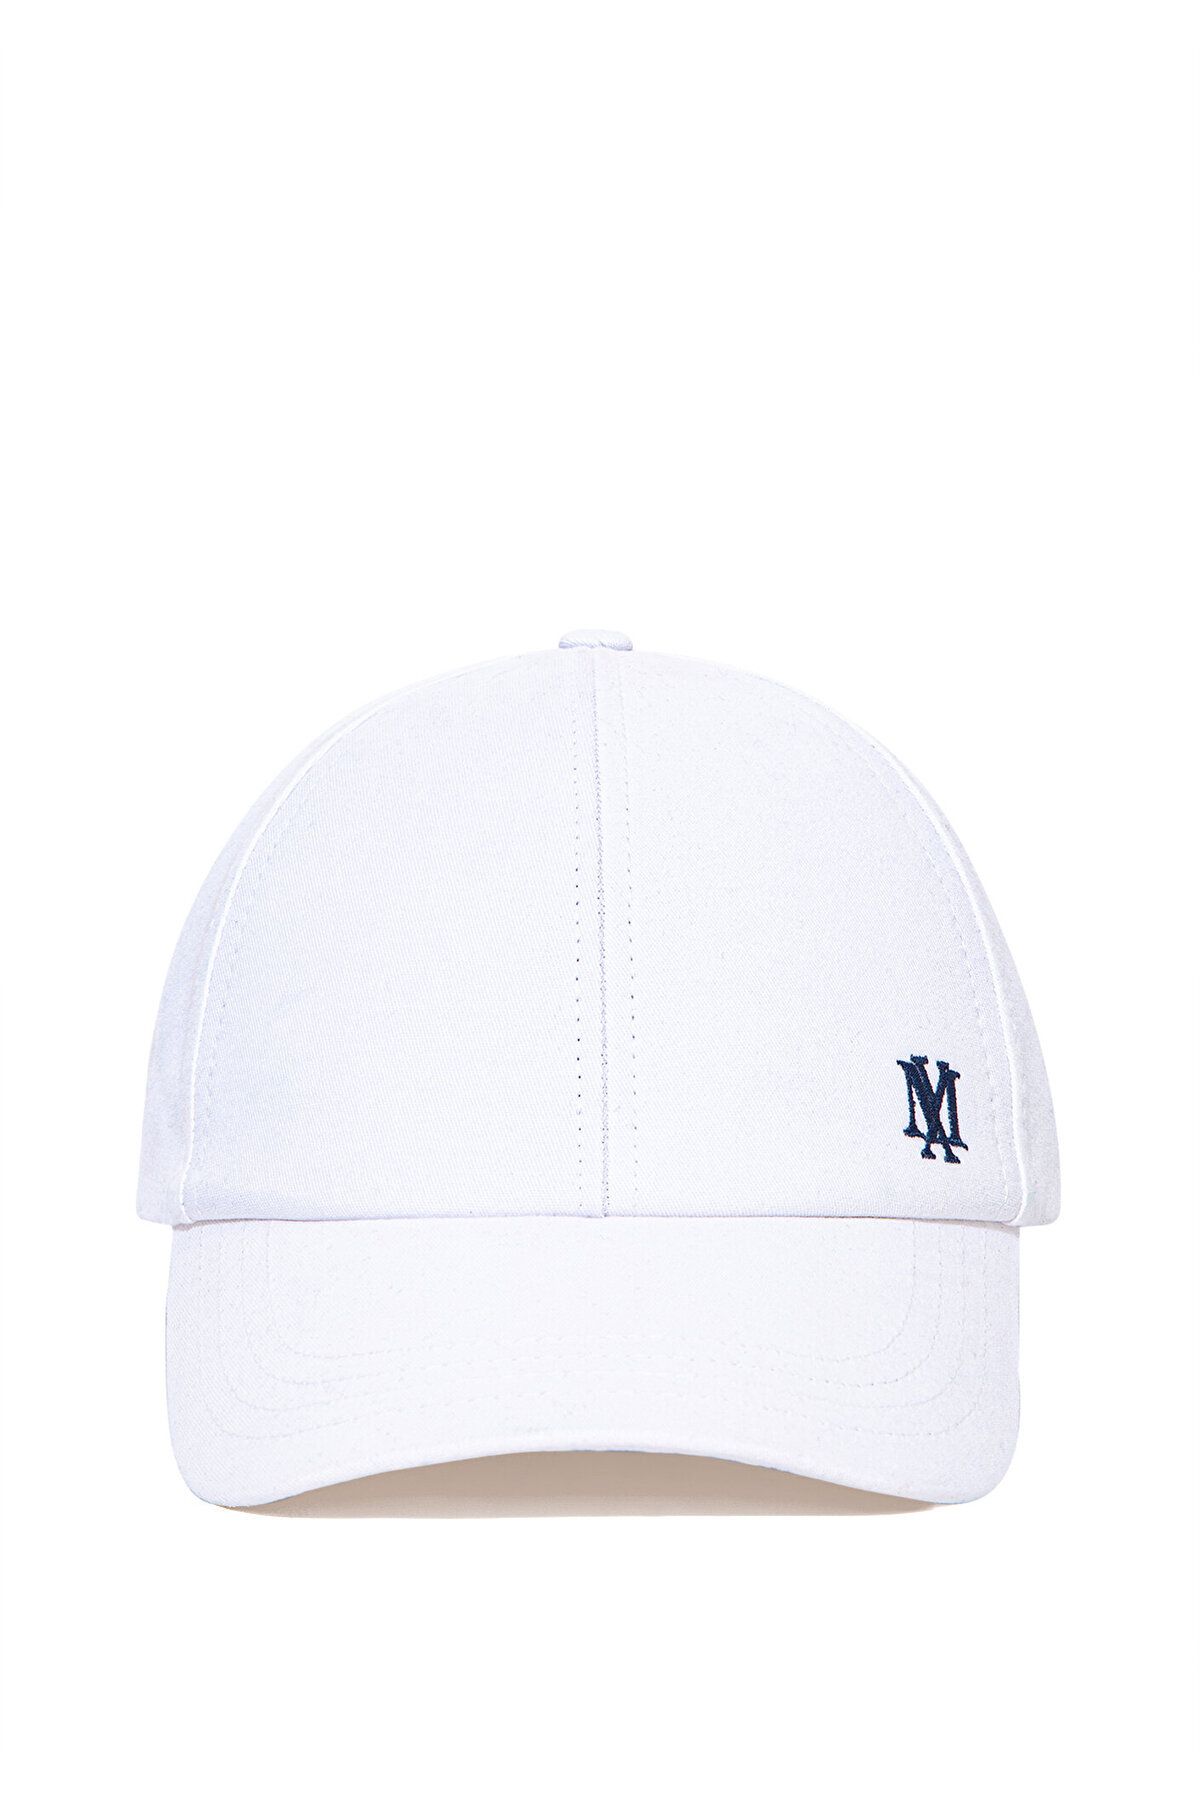 Mavi Mühür Logo Baskılı Beyaz Şapka 0911281-620